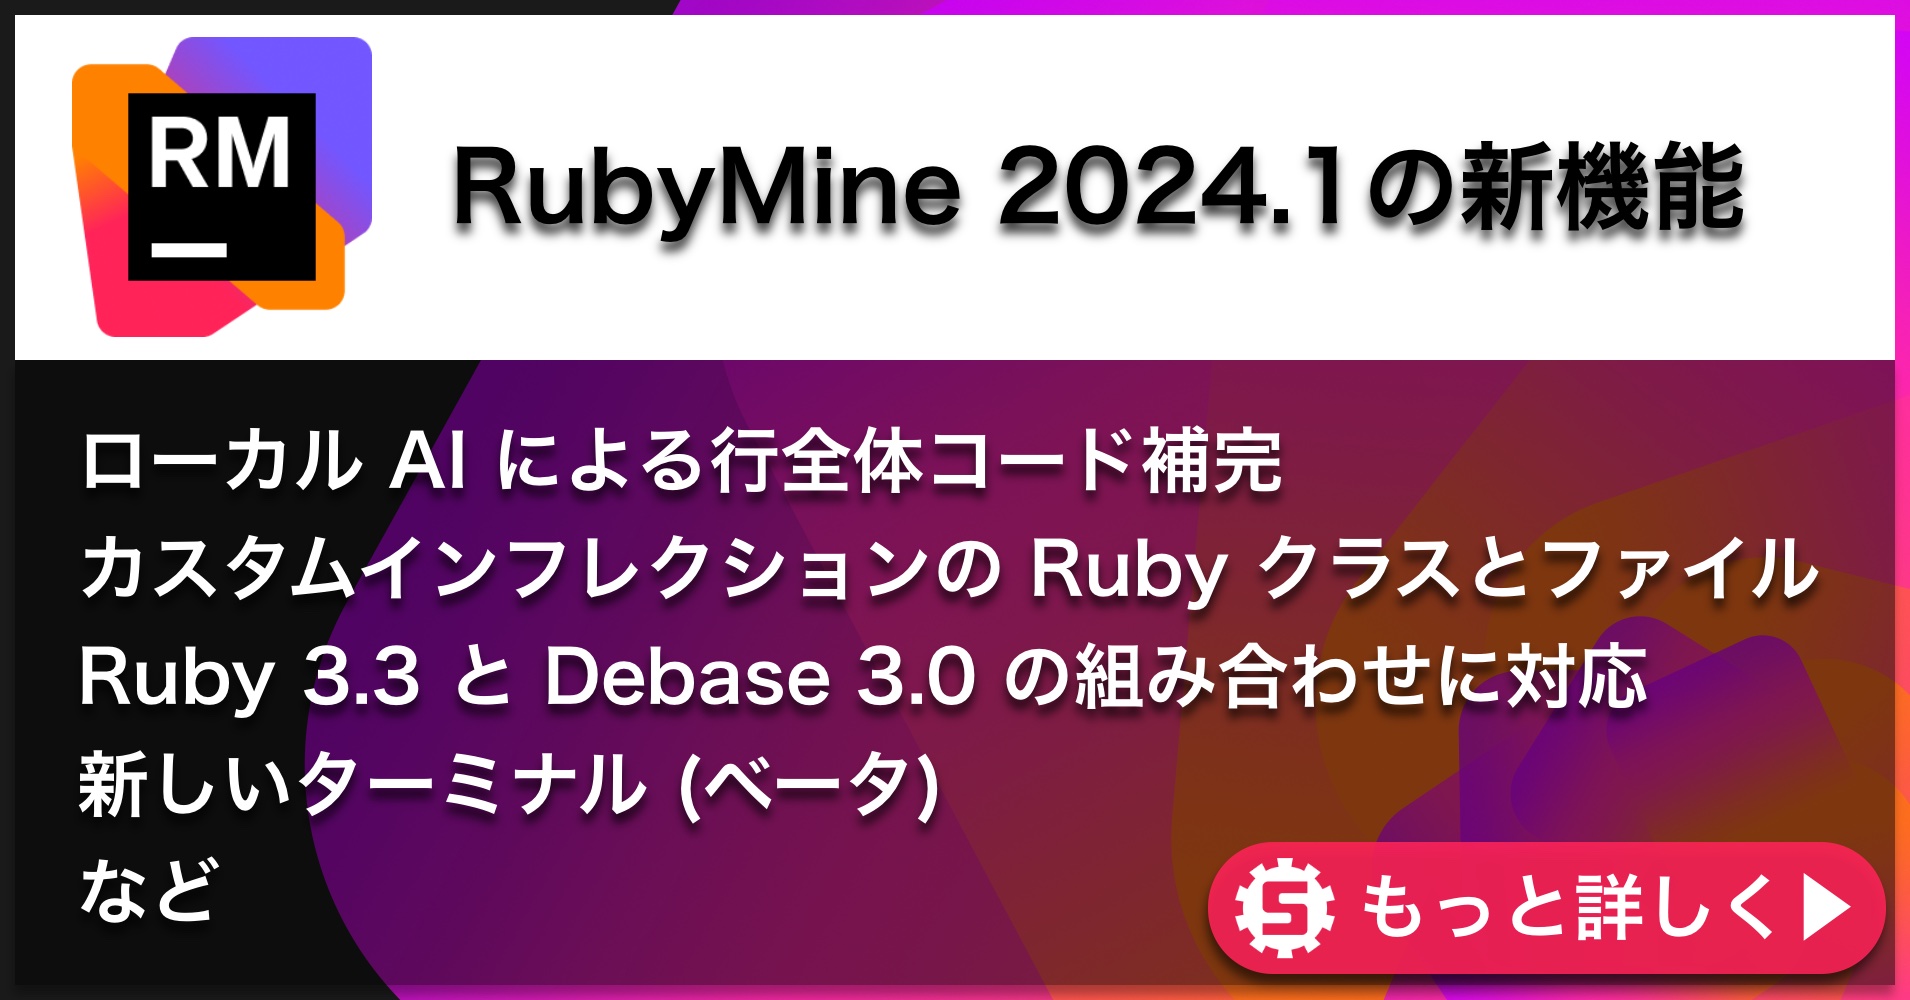 RubyMine 2024.1の新機能